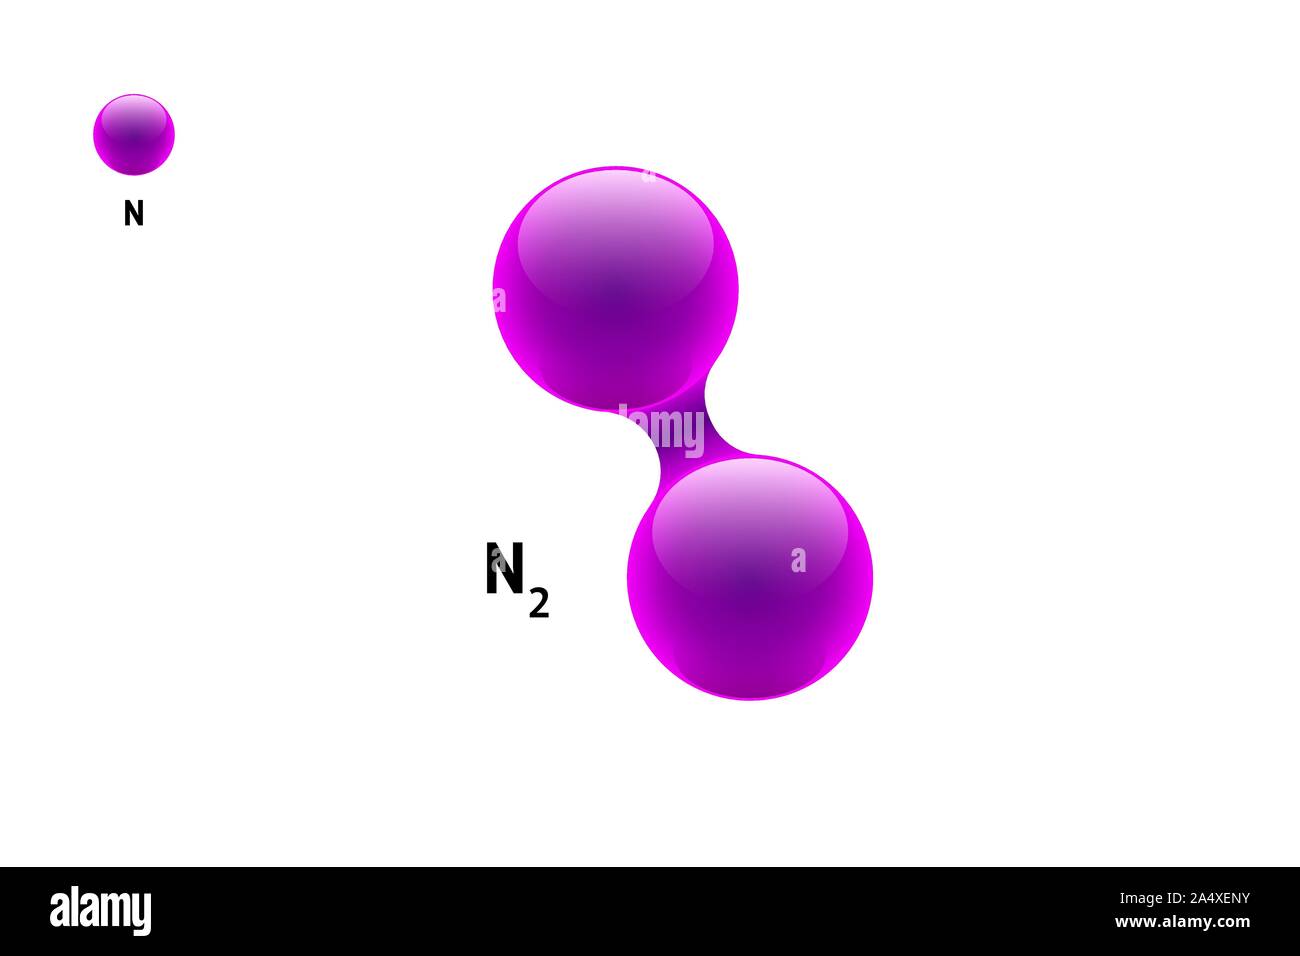 Chemie-Modell Molekül Stickstoff N2 wissenschaftliche Physik Element Formel. Integrierte Partikel natürliche anorganische 3d Azote Molekülstruktur bestehend. Zwei Volumen Atom Vektor Kugeln Stock Vektor